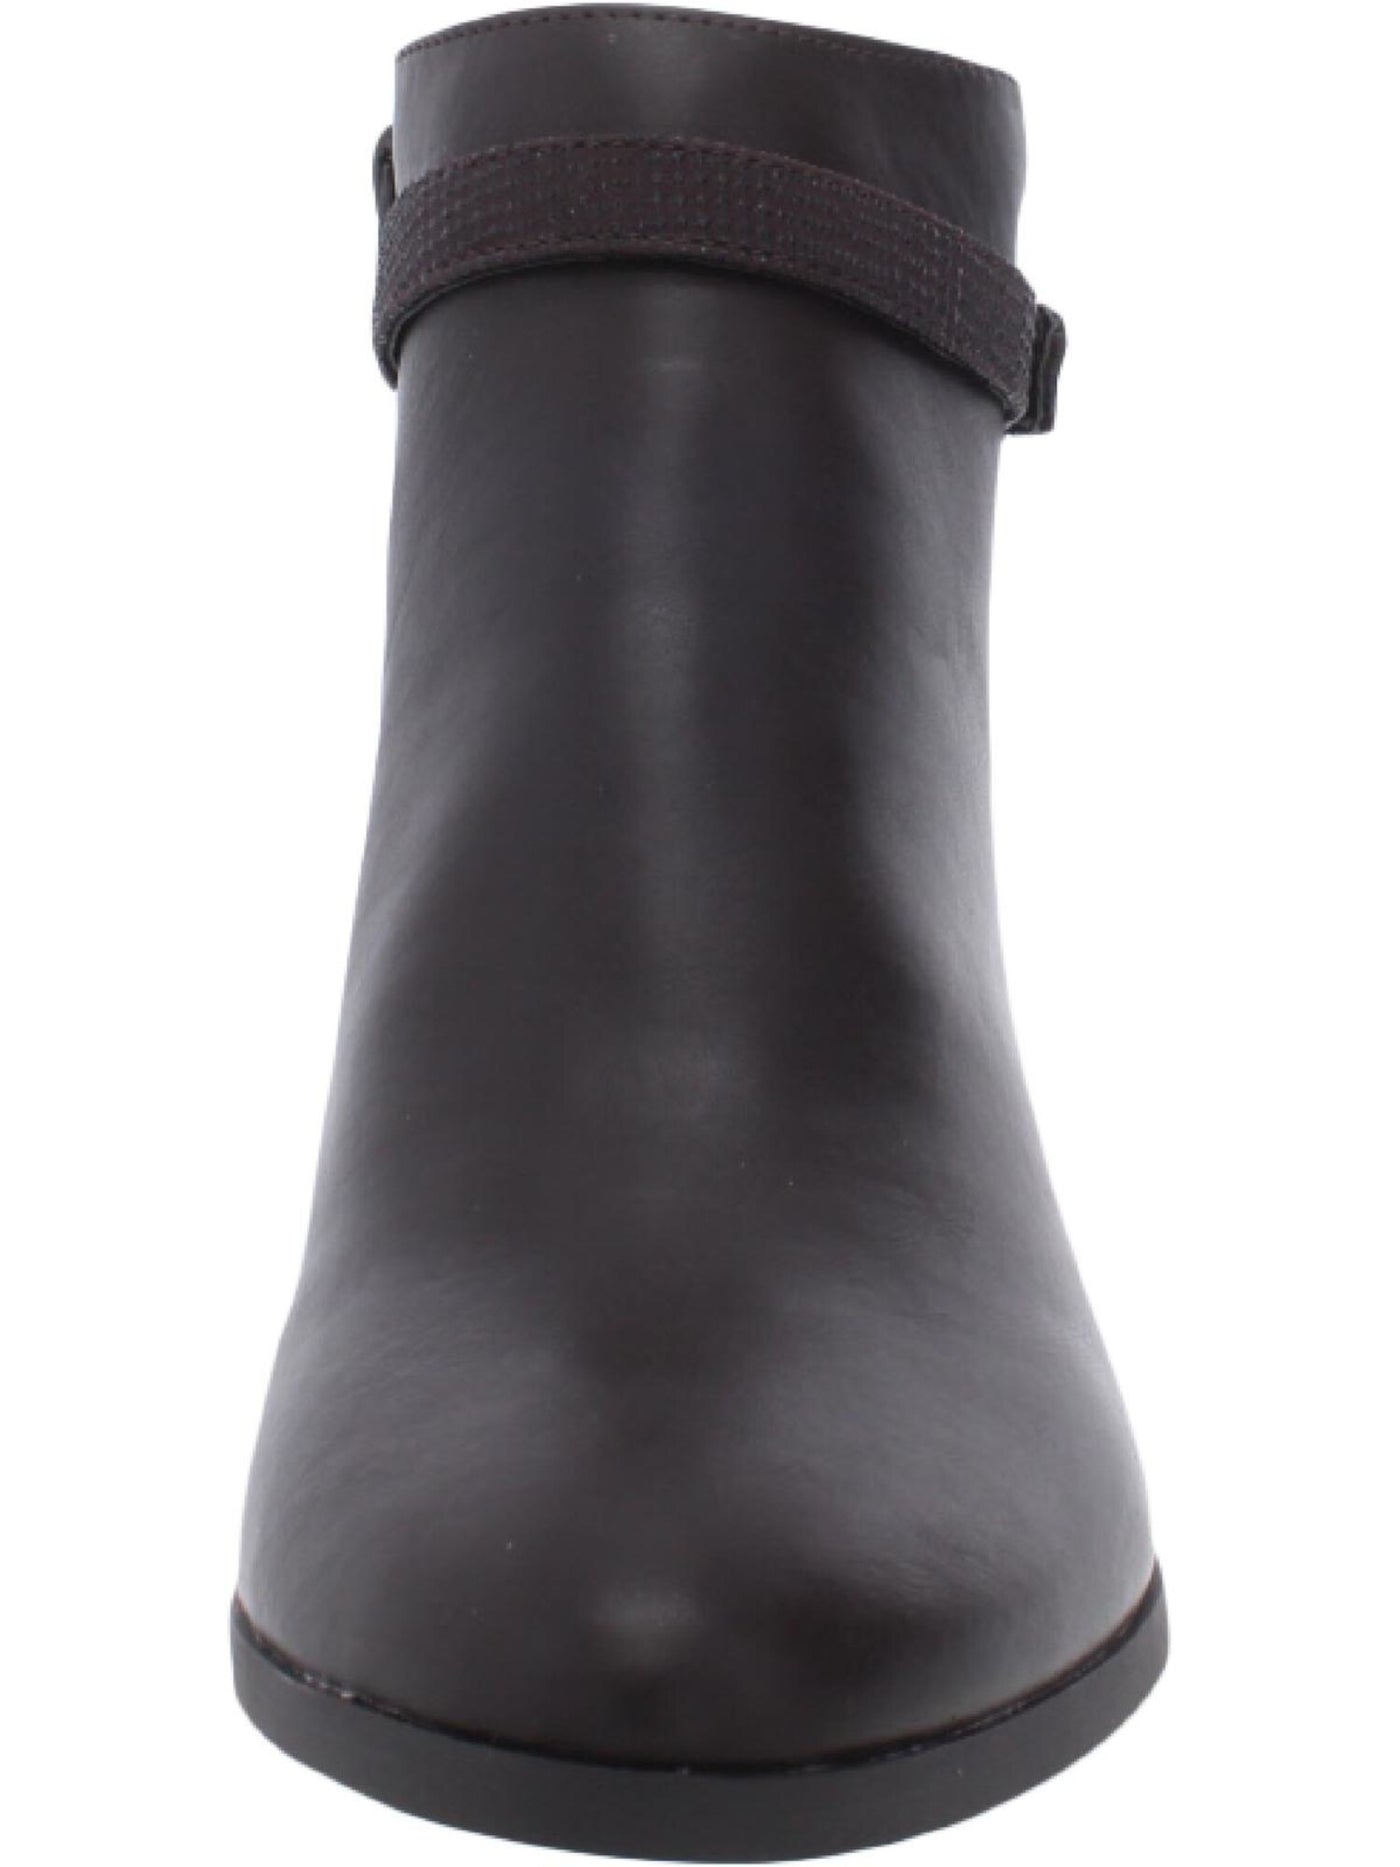 CHARTER CLUB Womens Brown Buckle Accent Comfort Pixxy Almond Toe Block Heel Zip-Up Dress Booties 8 M